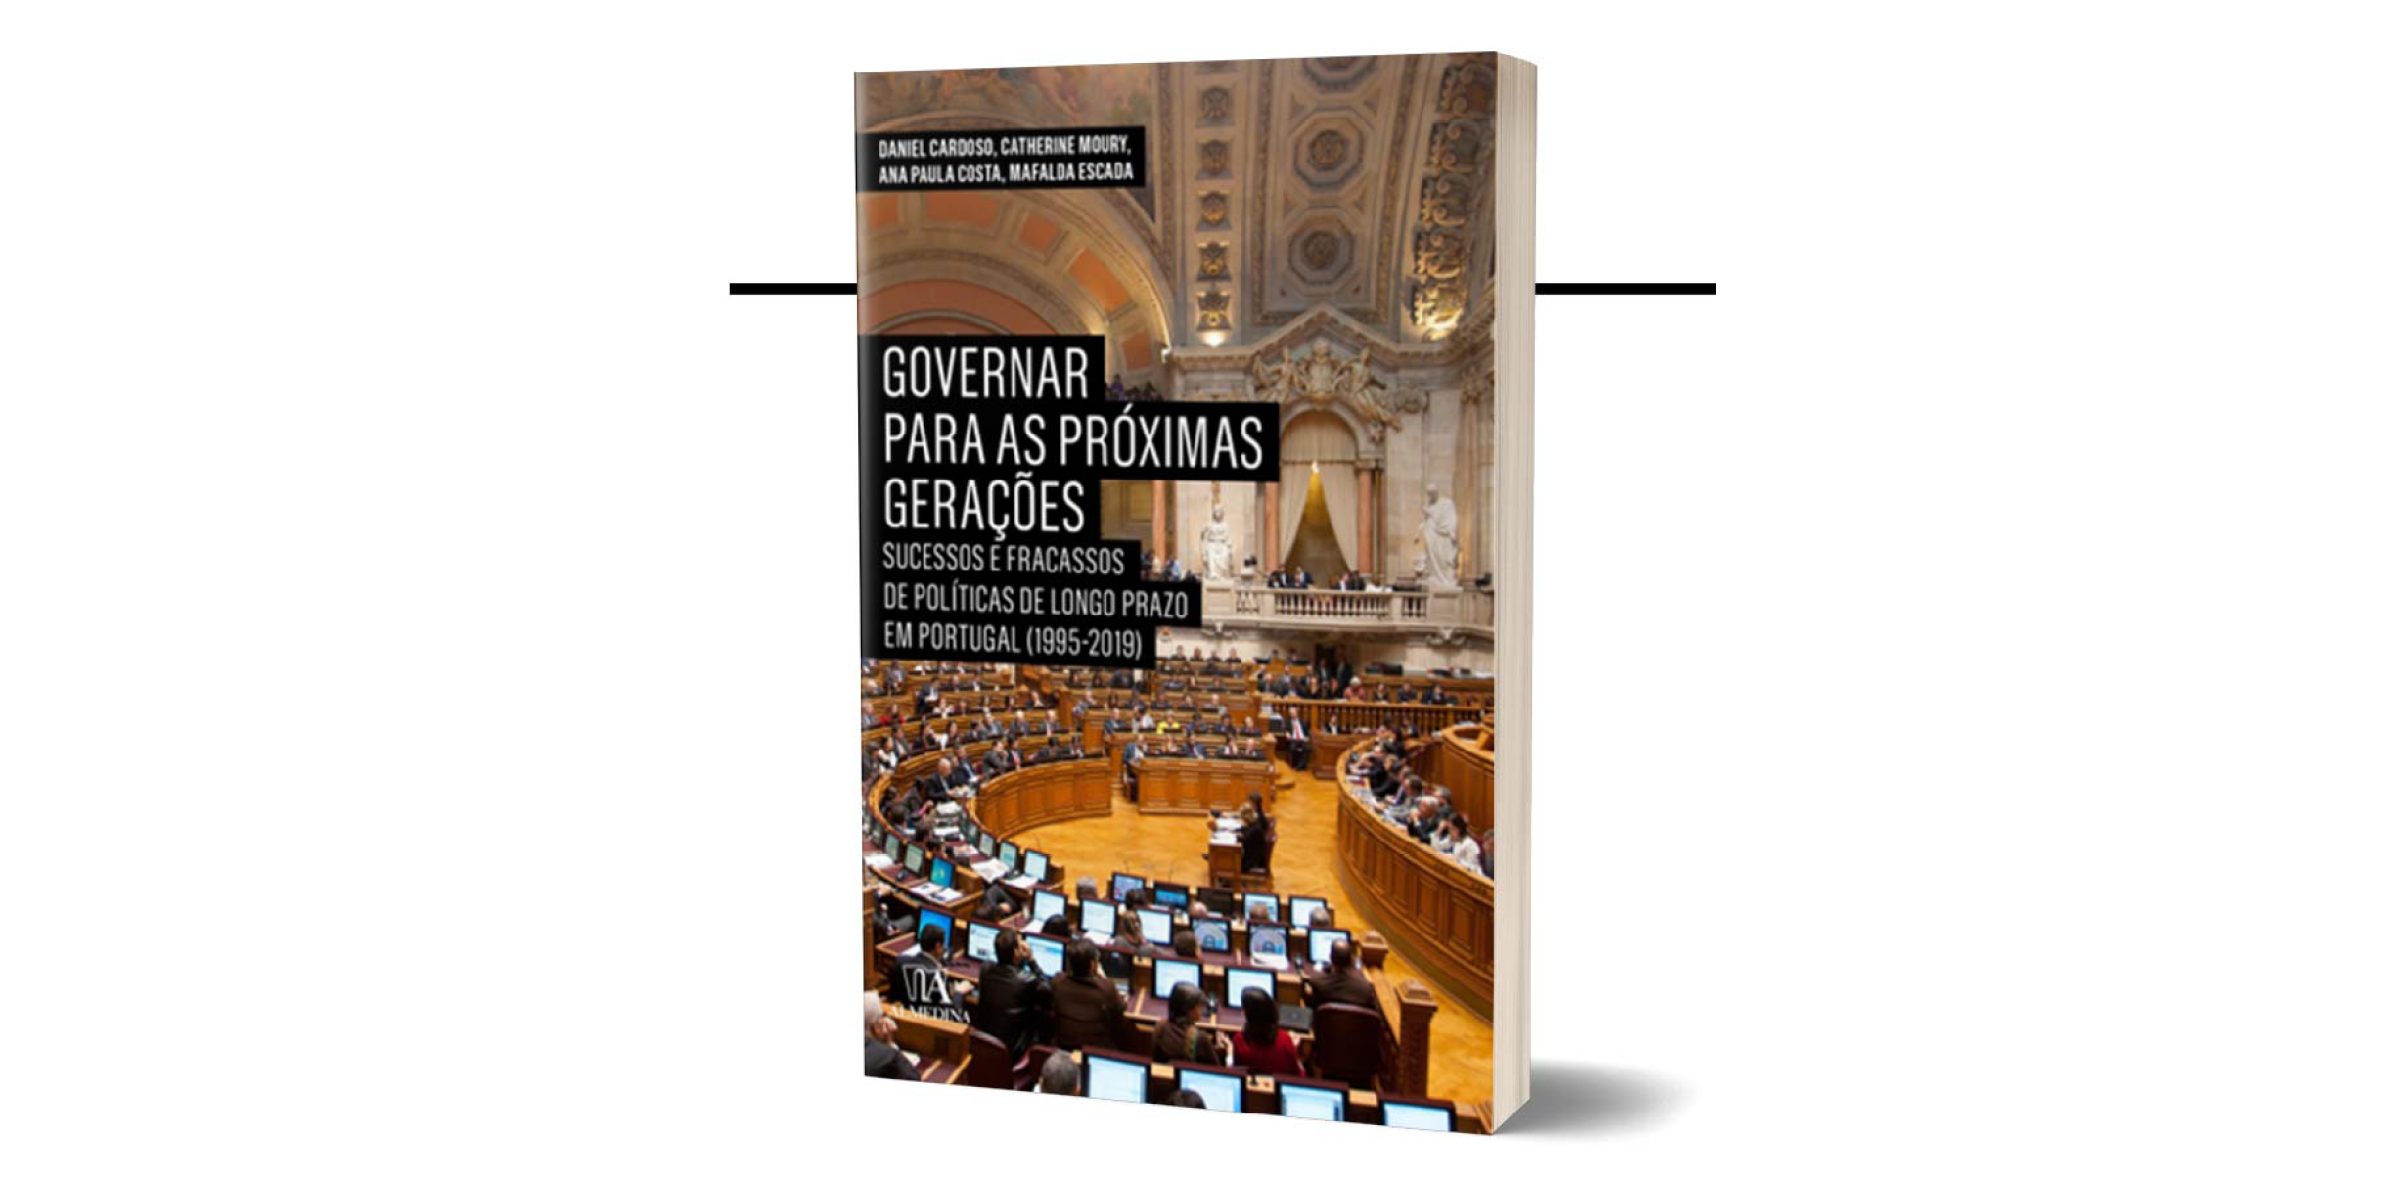 LAUNCHING SESSION OF THE BOOK “GOVERNAR PARA AS PRÓXIMAS GERAÇÕES: SUCESSOS E FRACASSOS DE POLÍTICAS DE LONGO-PRAZO EM PORTUGAL (1995-2019)”